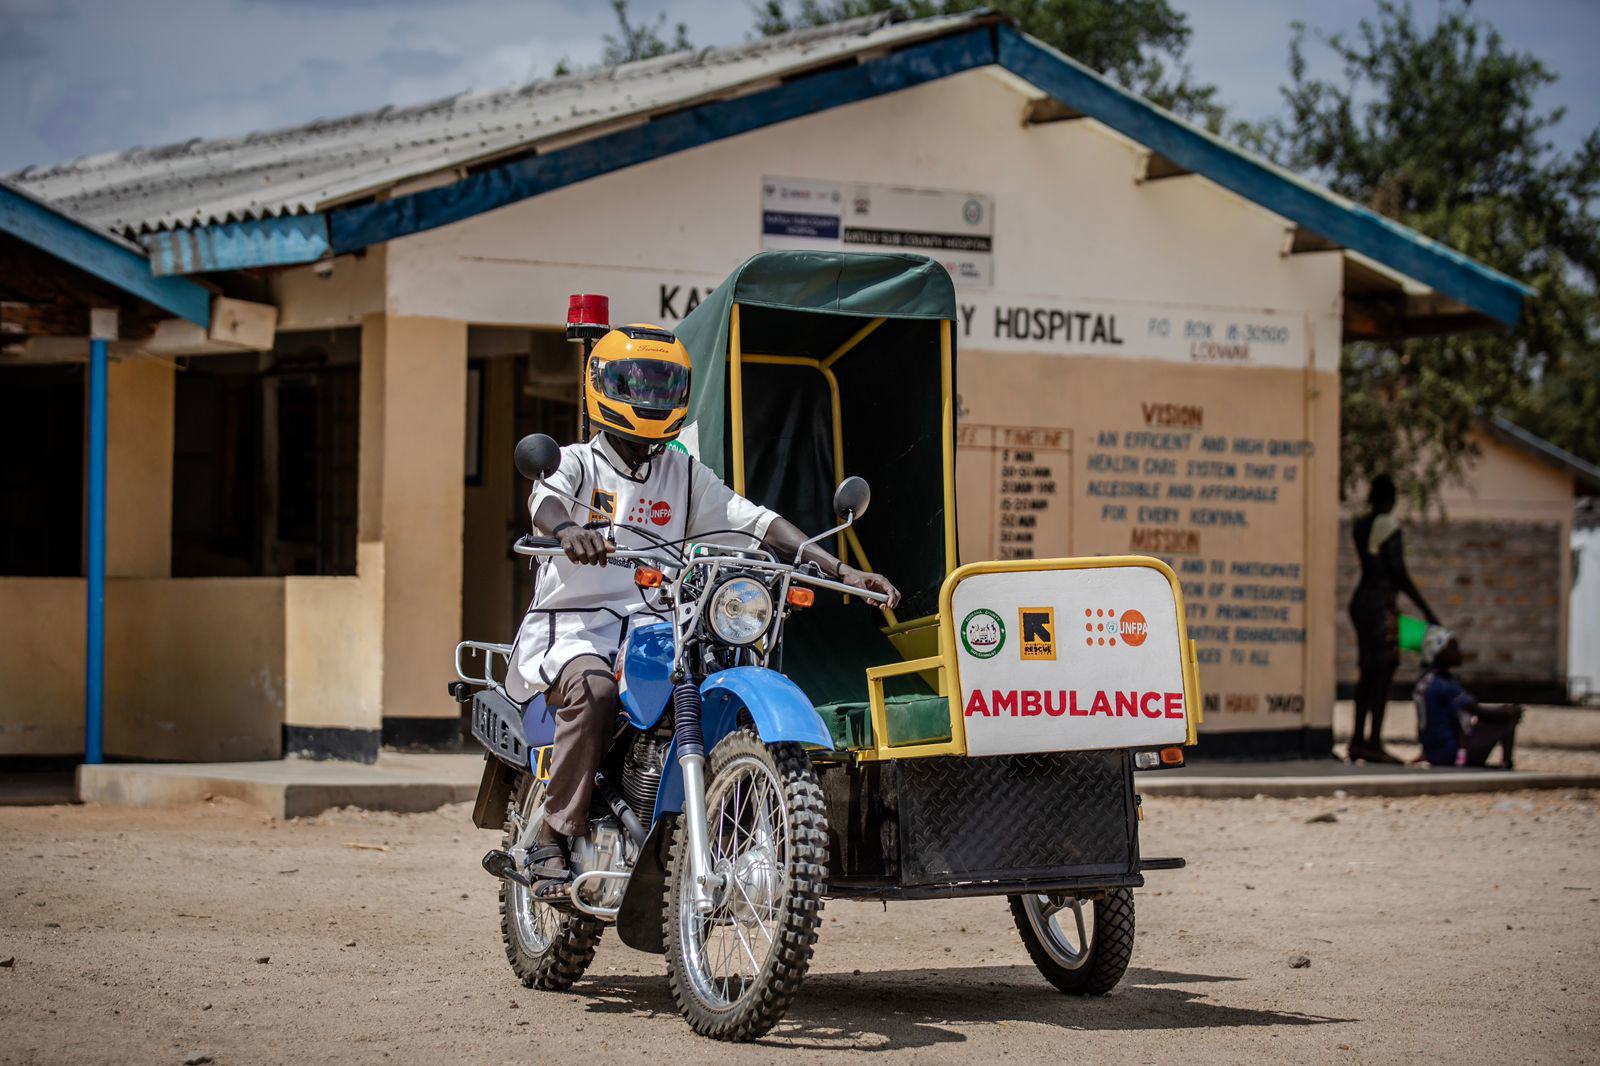 Devam eden kuraklık, Kenya'nın Turkana İlçesindeki kadınların temel sağlık hizmetlerine erişimini çok daha zorlaştırdı - UNFPA motosiklet ambulansının üstesinden gelmeye yardımcı olduğu tehlikeli bir durum.